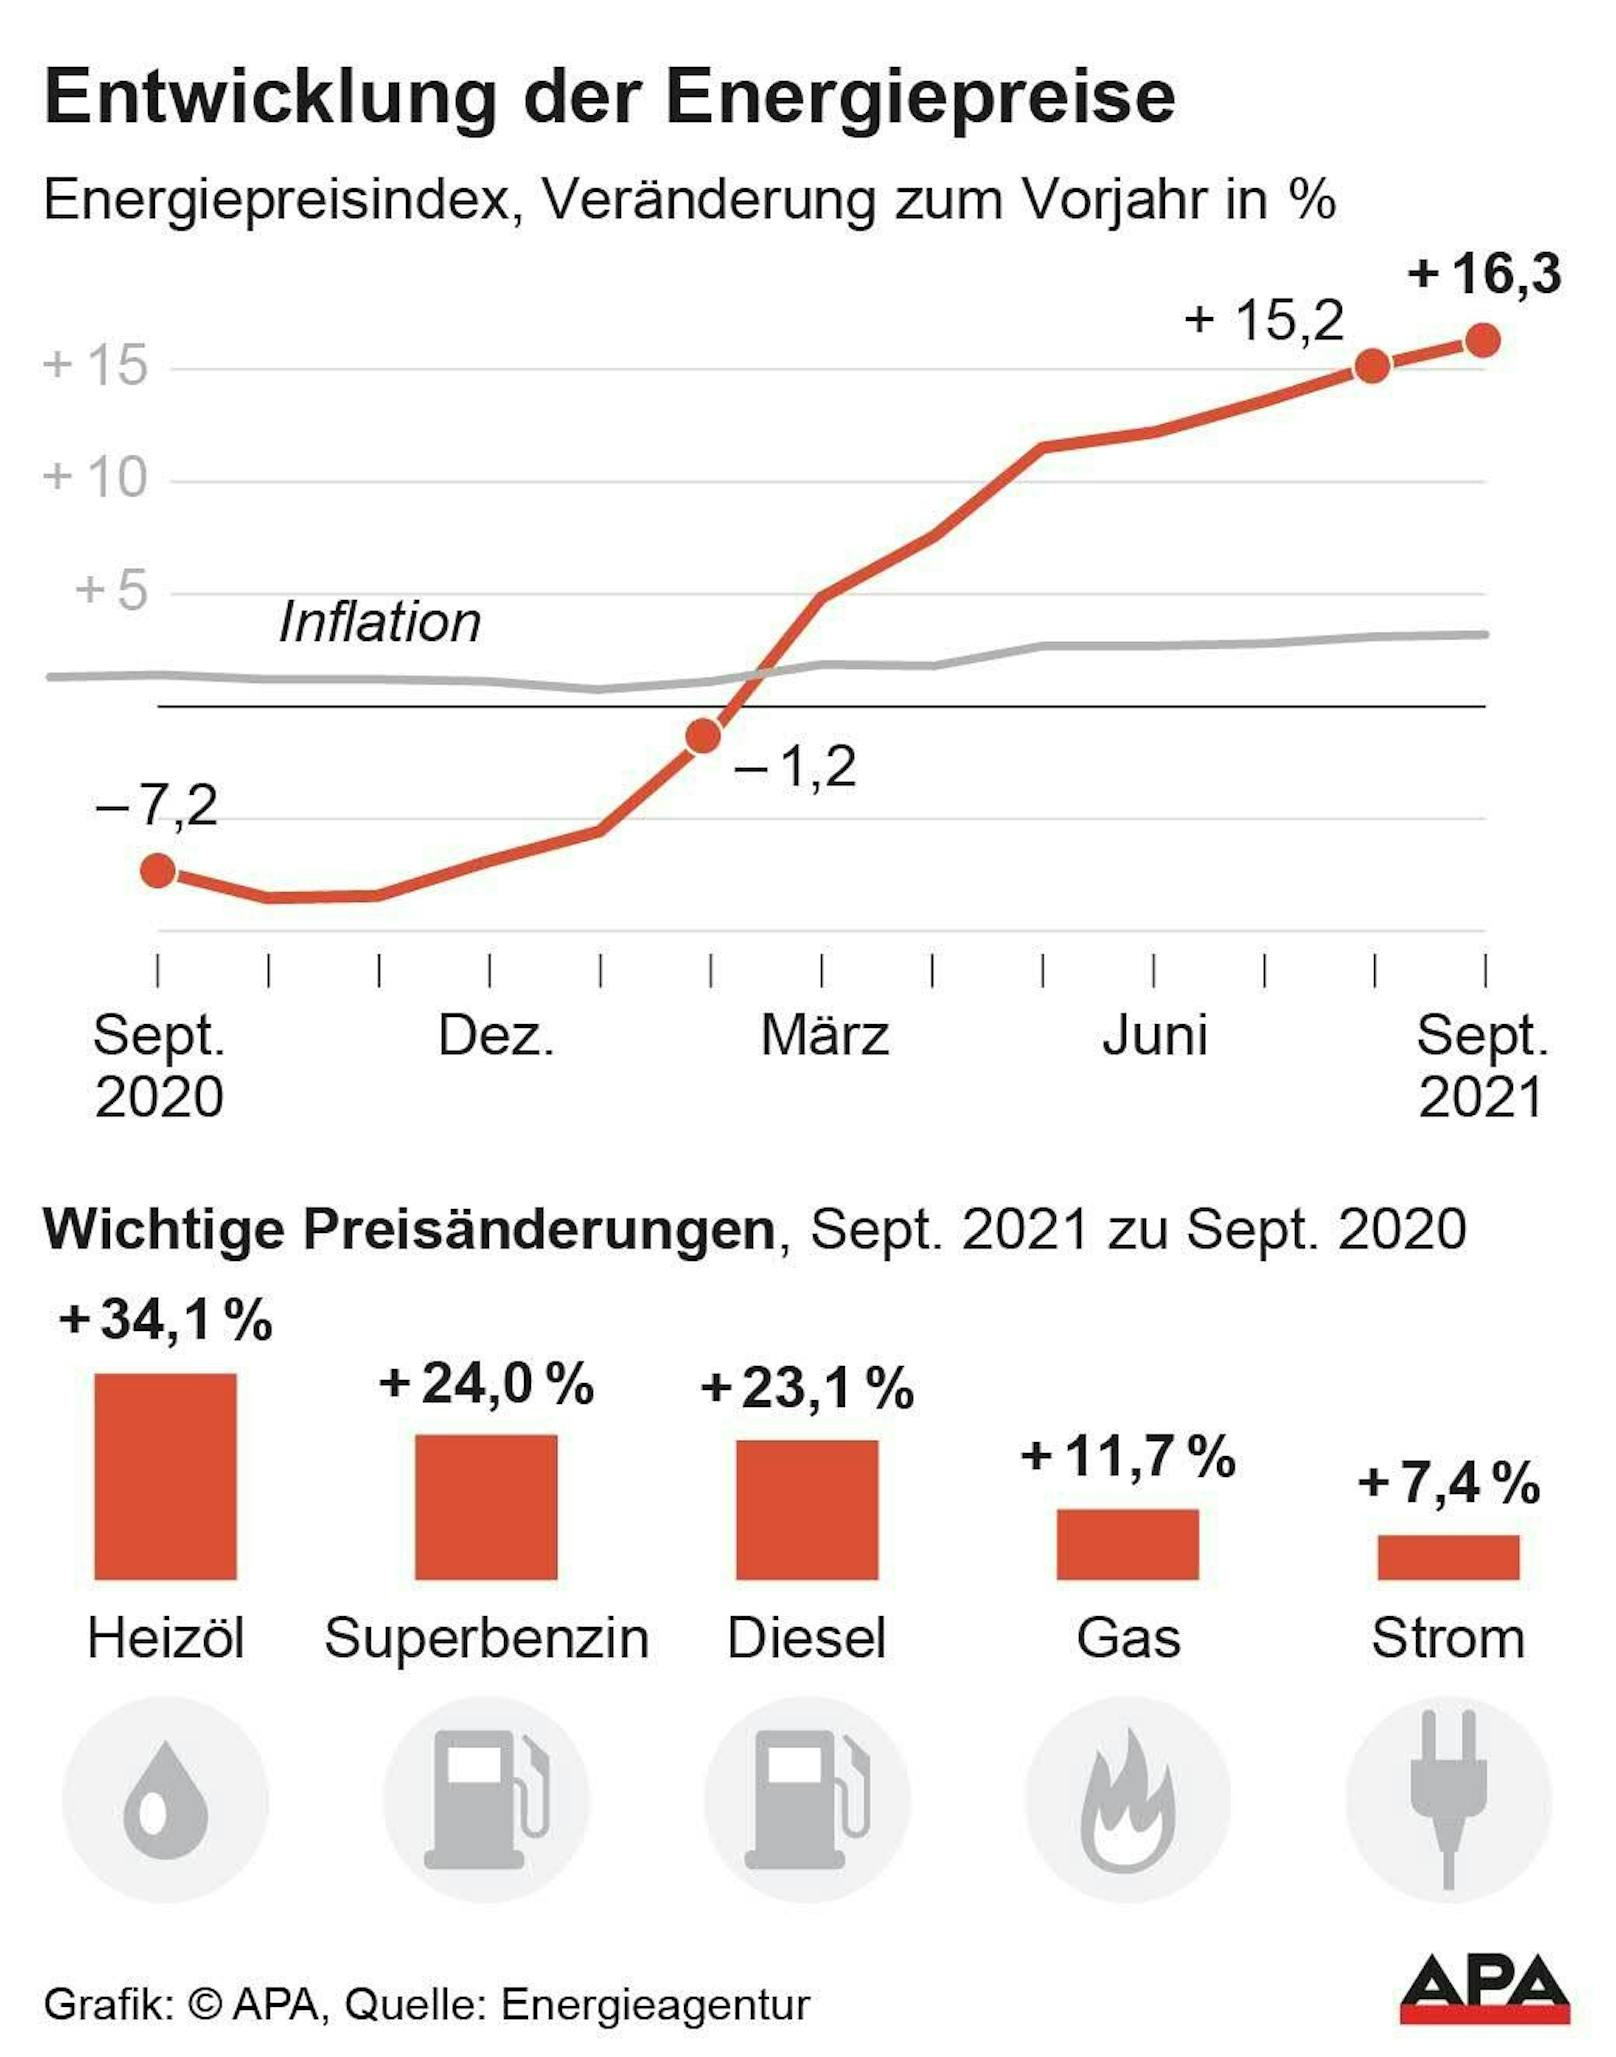 Energiepreisindex September - Verlauf seit dem Vorjahr